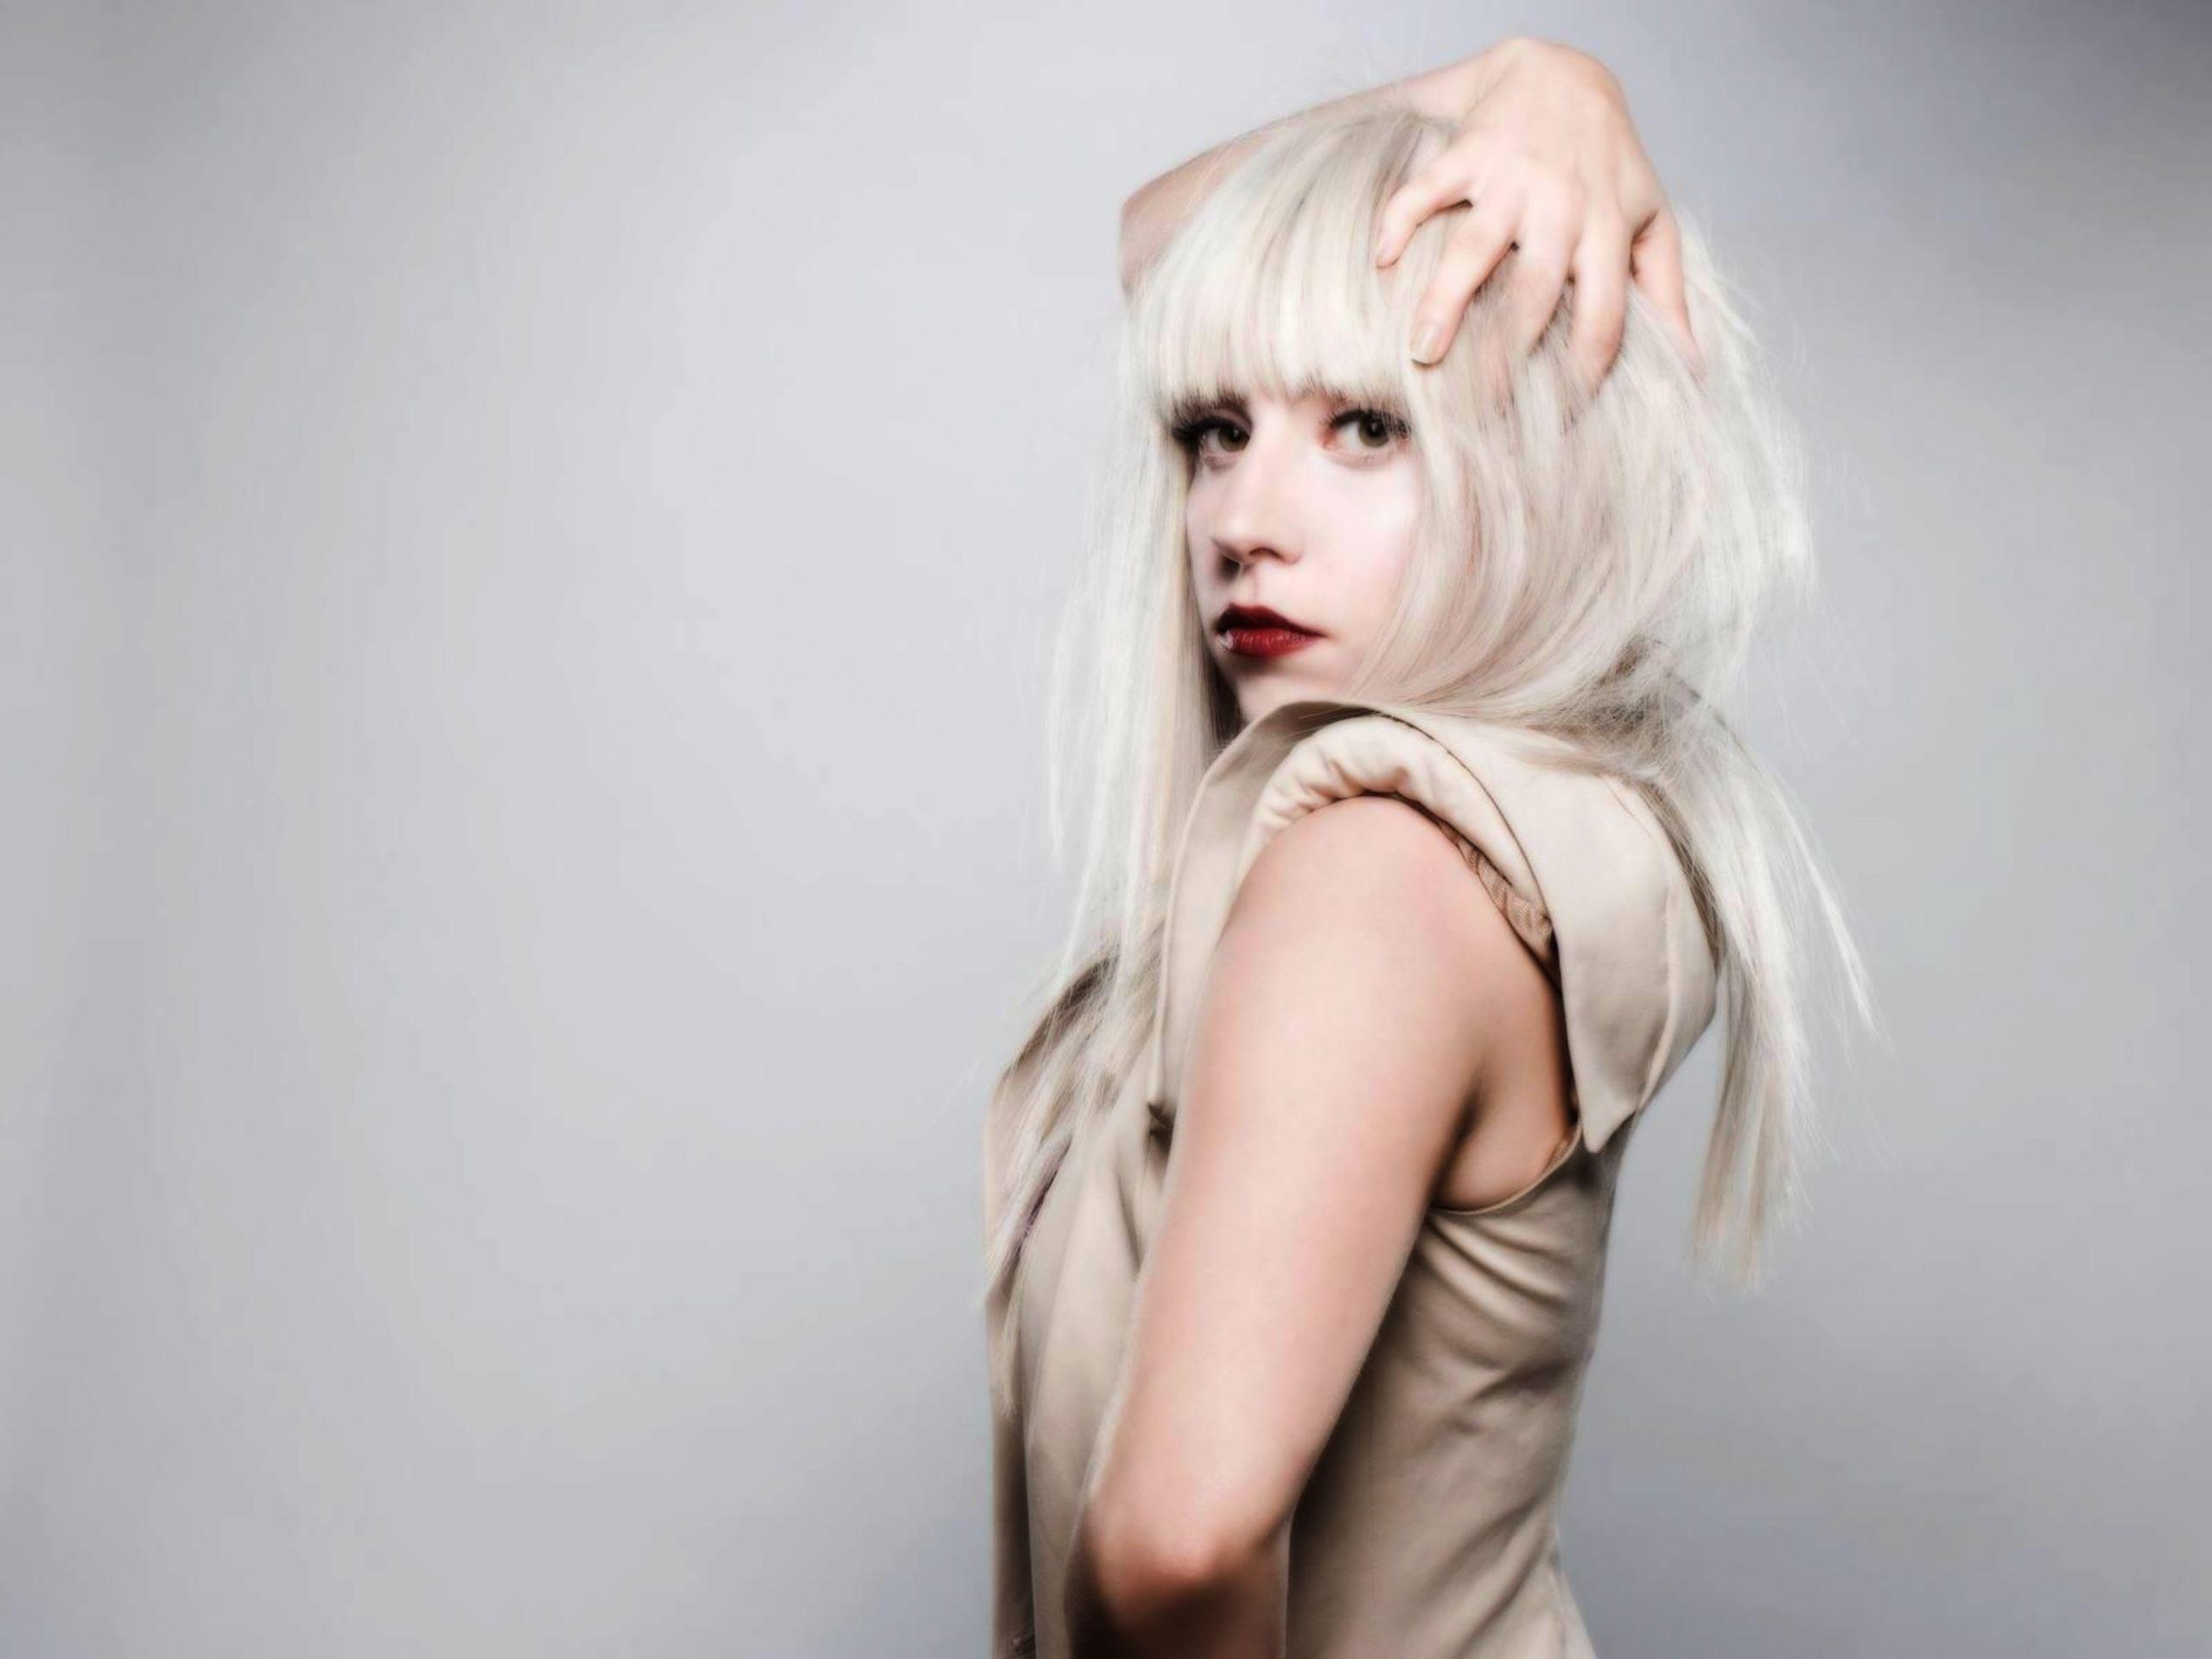 Hình ảnh Lady Gaga 2560x1920 - Hình nền, Độ nét cao, Chất lượng cao